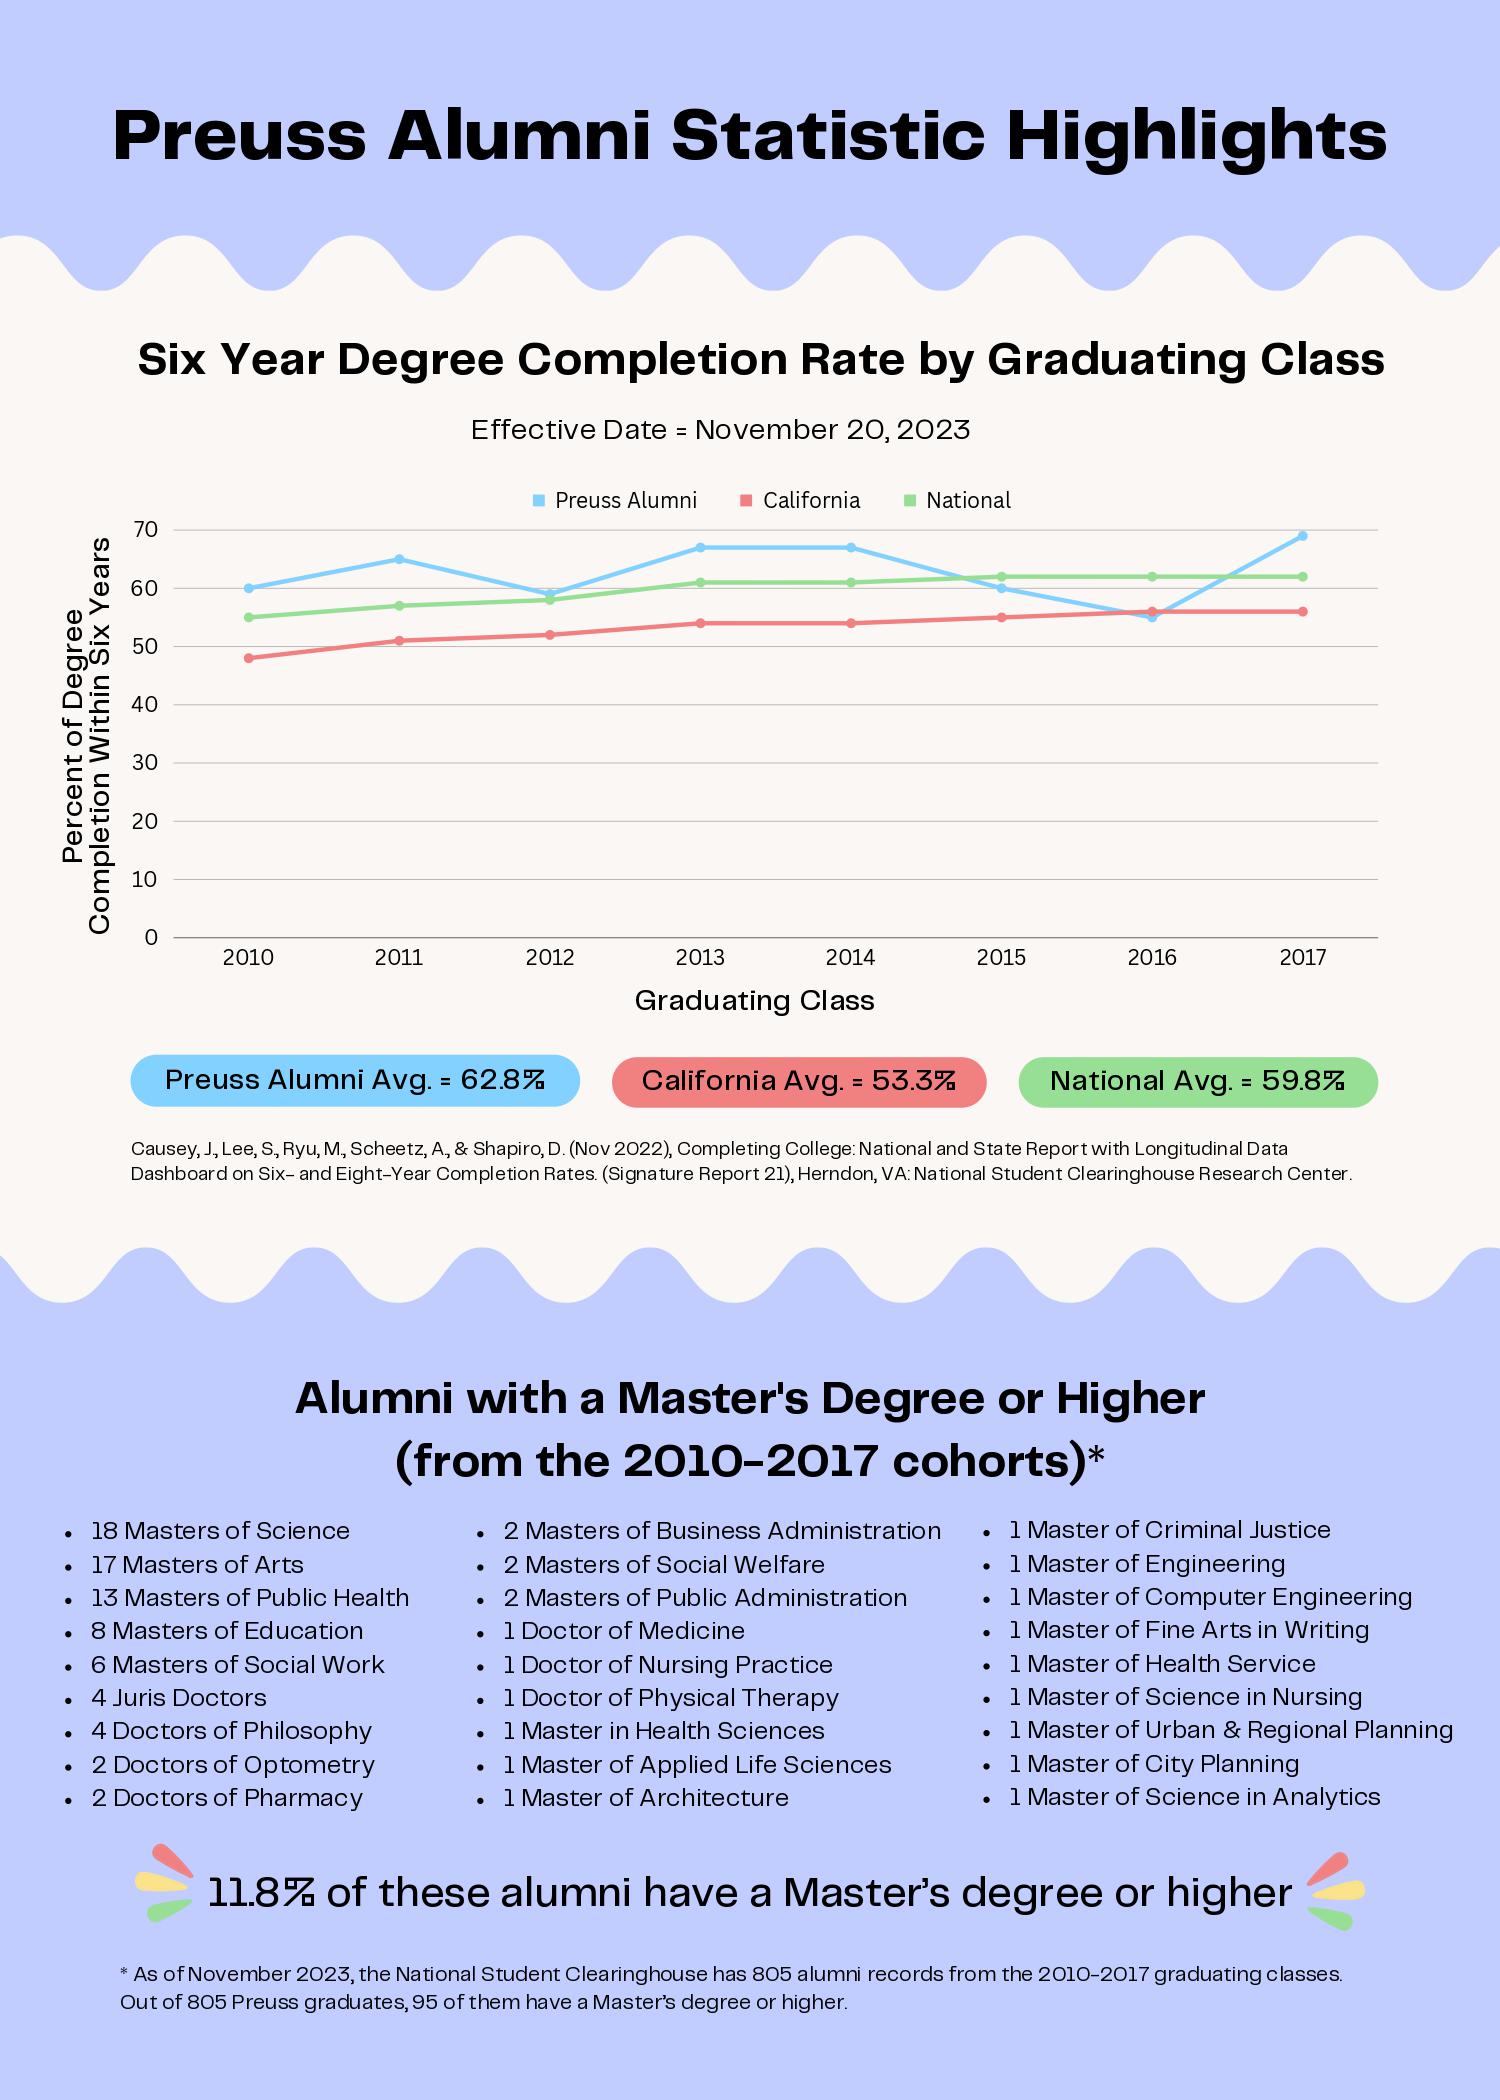 Alumni-Stat-Highlights-2.jpg